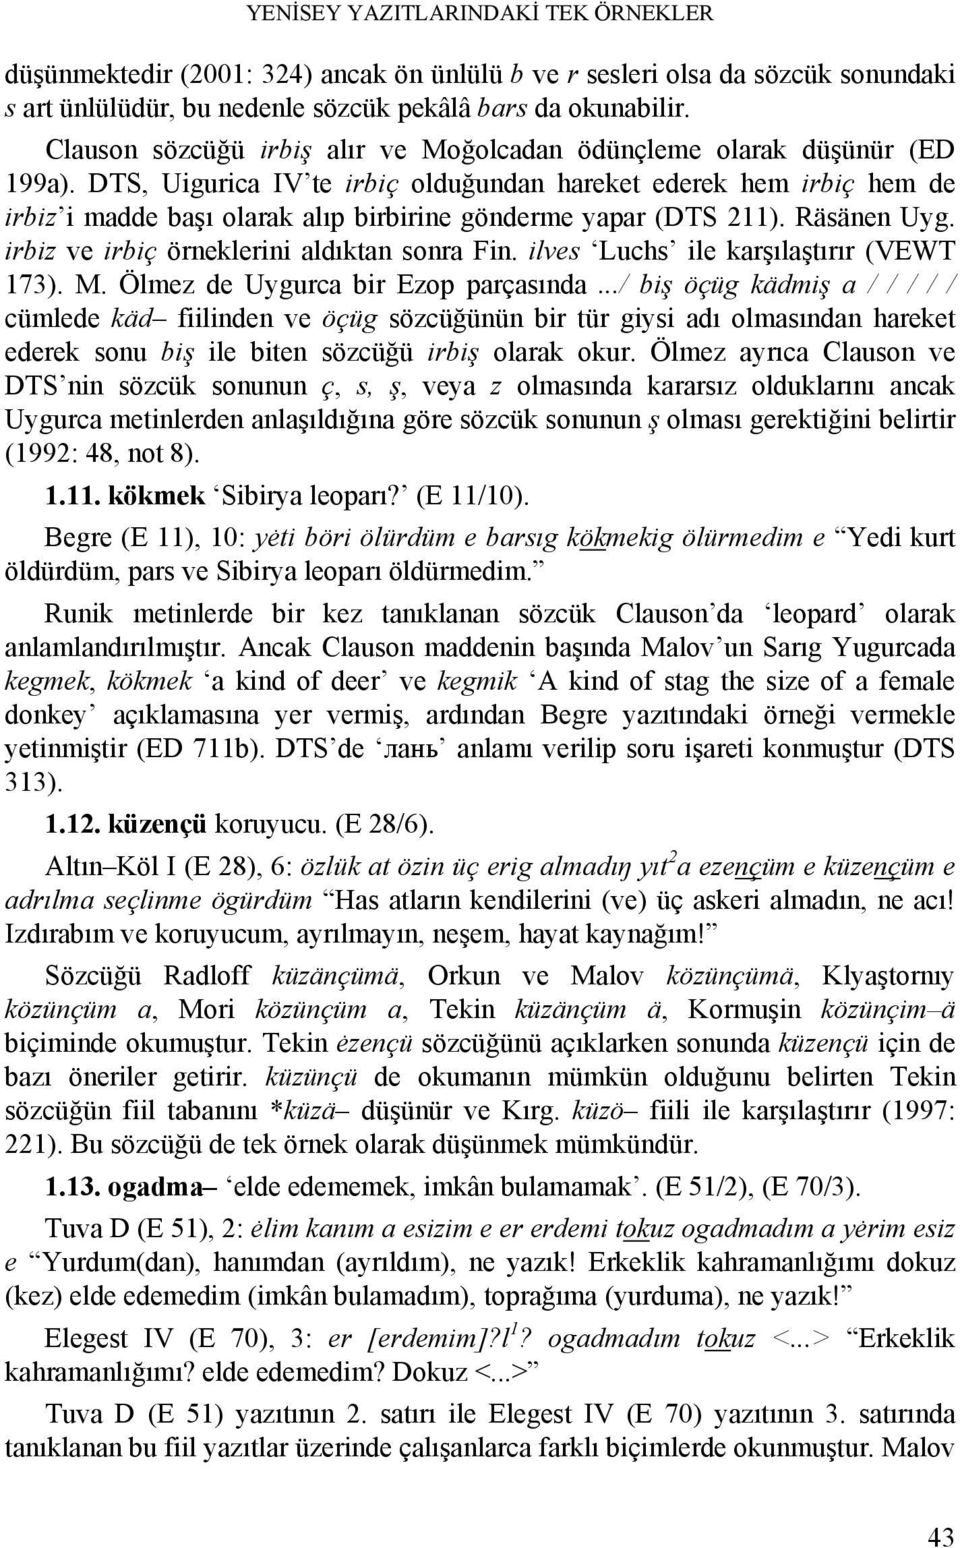 DTS, Uigurica IV te irbiç olduğundan hareket ederek hem irbiç hem de irbiz i madde başı olarak alıp birbirine gönderme yapar (DTS 211). Räsänen Uyg. irbiz ve irbiç örneklerini aldıktan sonra Fin.